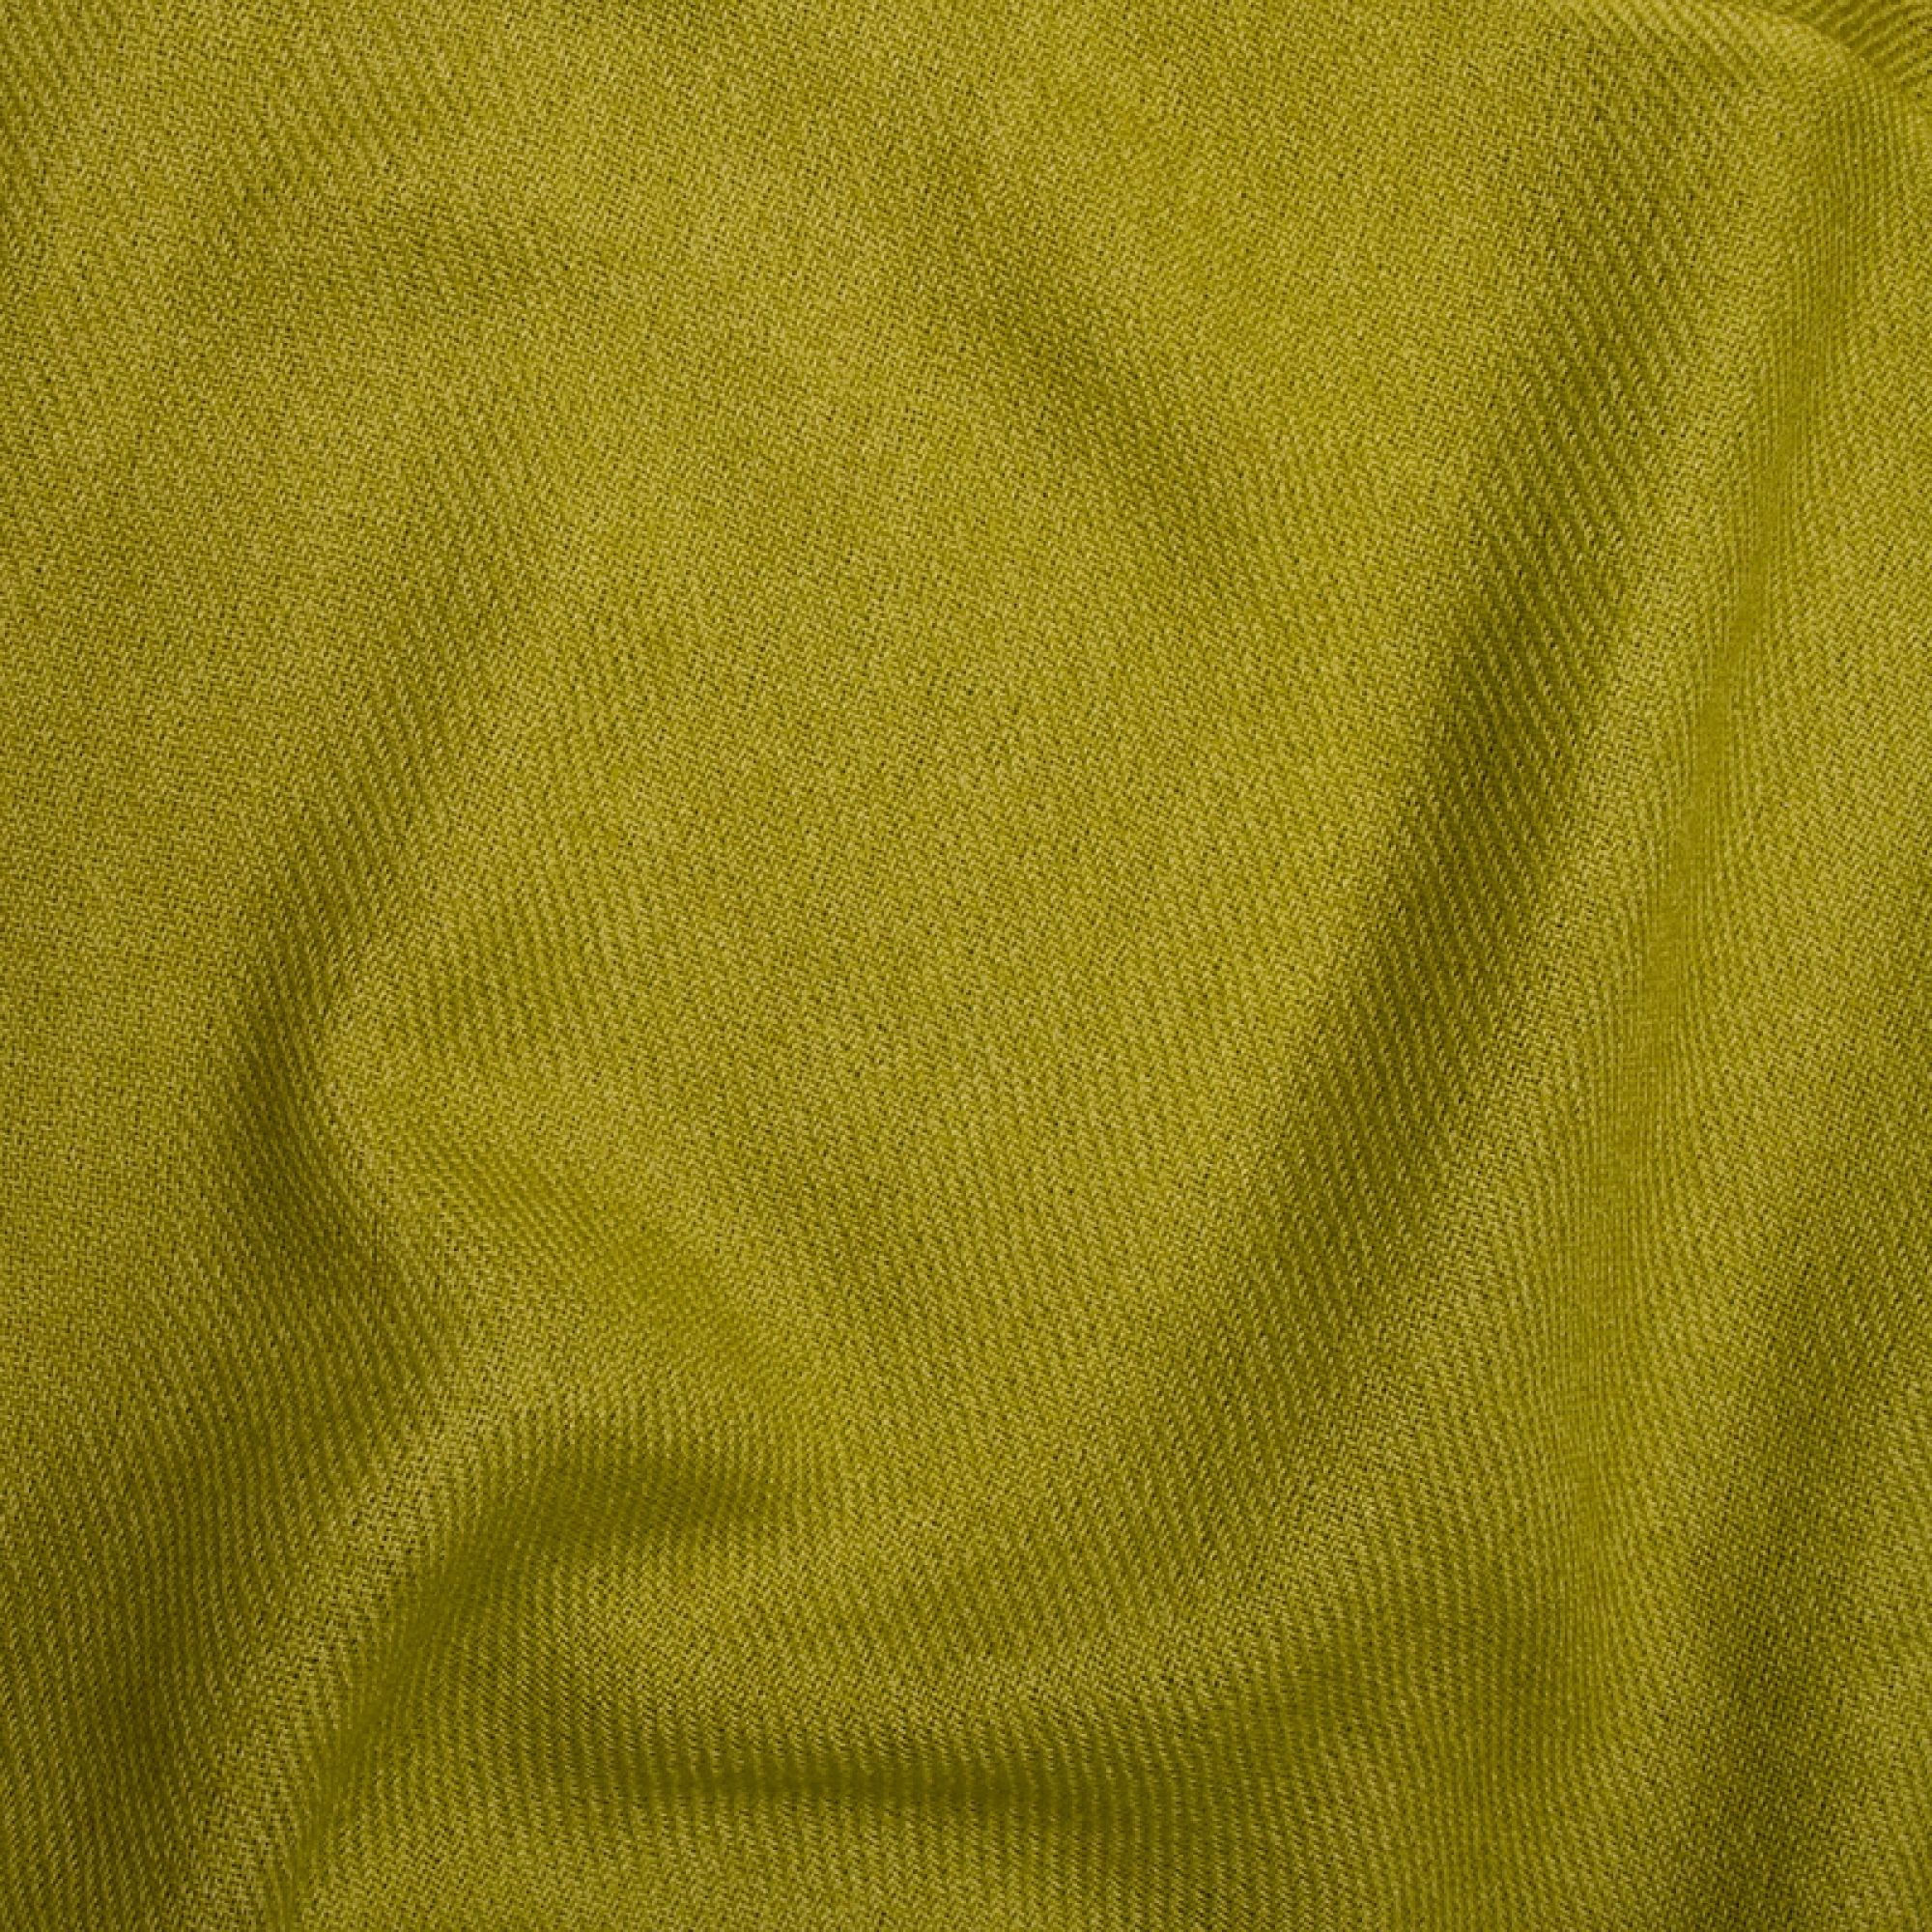 Cachemire accessoires couvertures plaids frisbi 147 x 203 vert petillant 147 x 203 cm